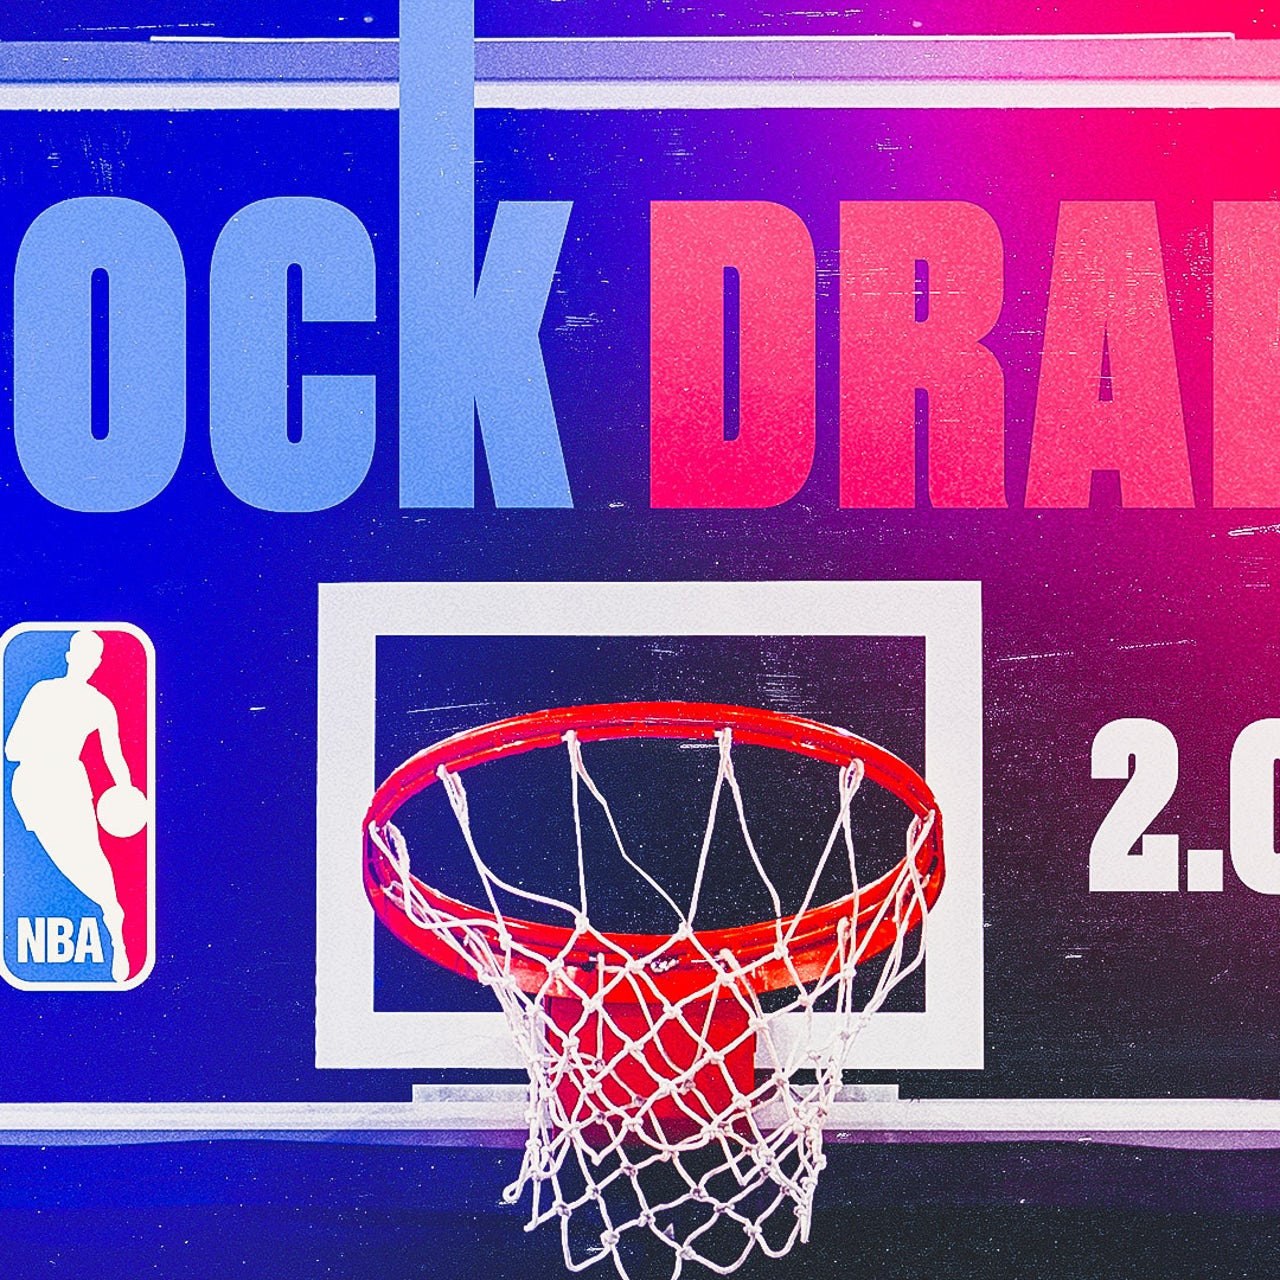 OKC Thunder - NBA Draft Prospect Series: Wendell Carter Jr. could